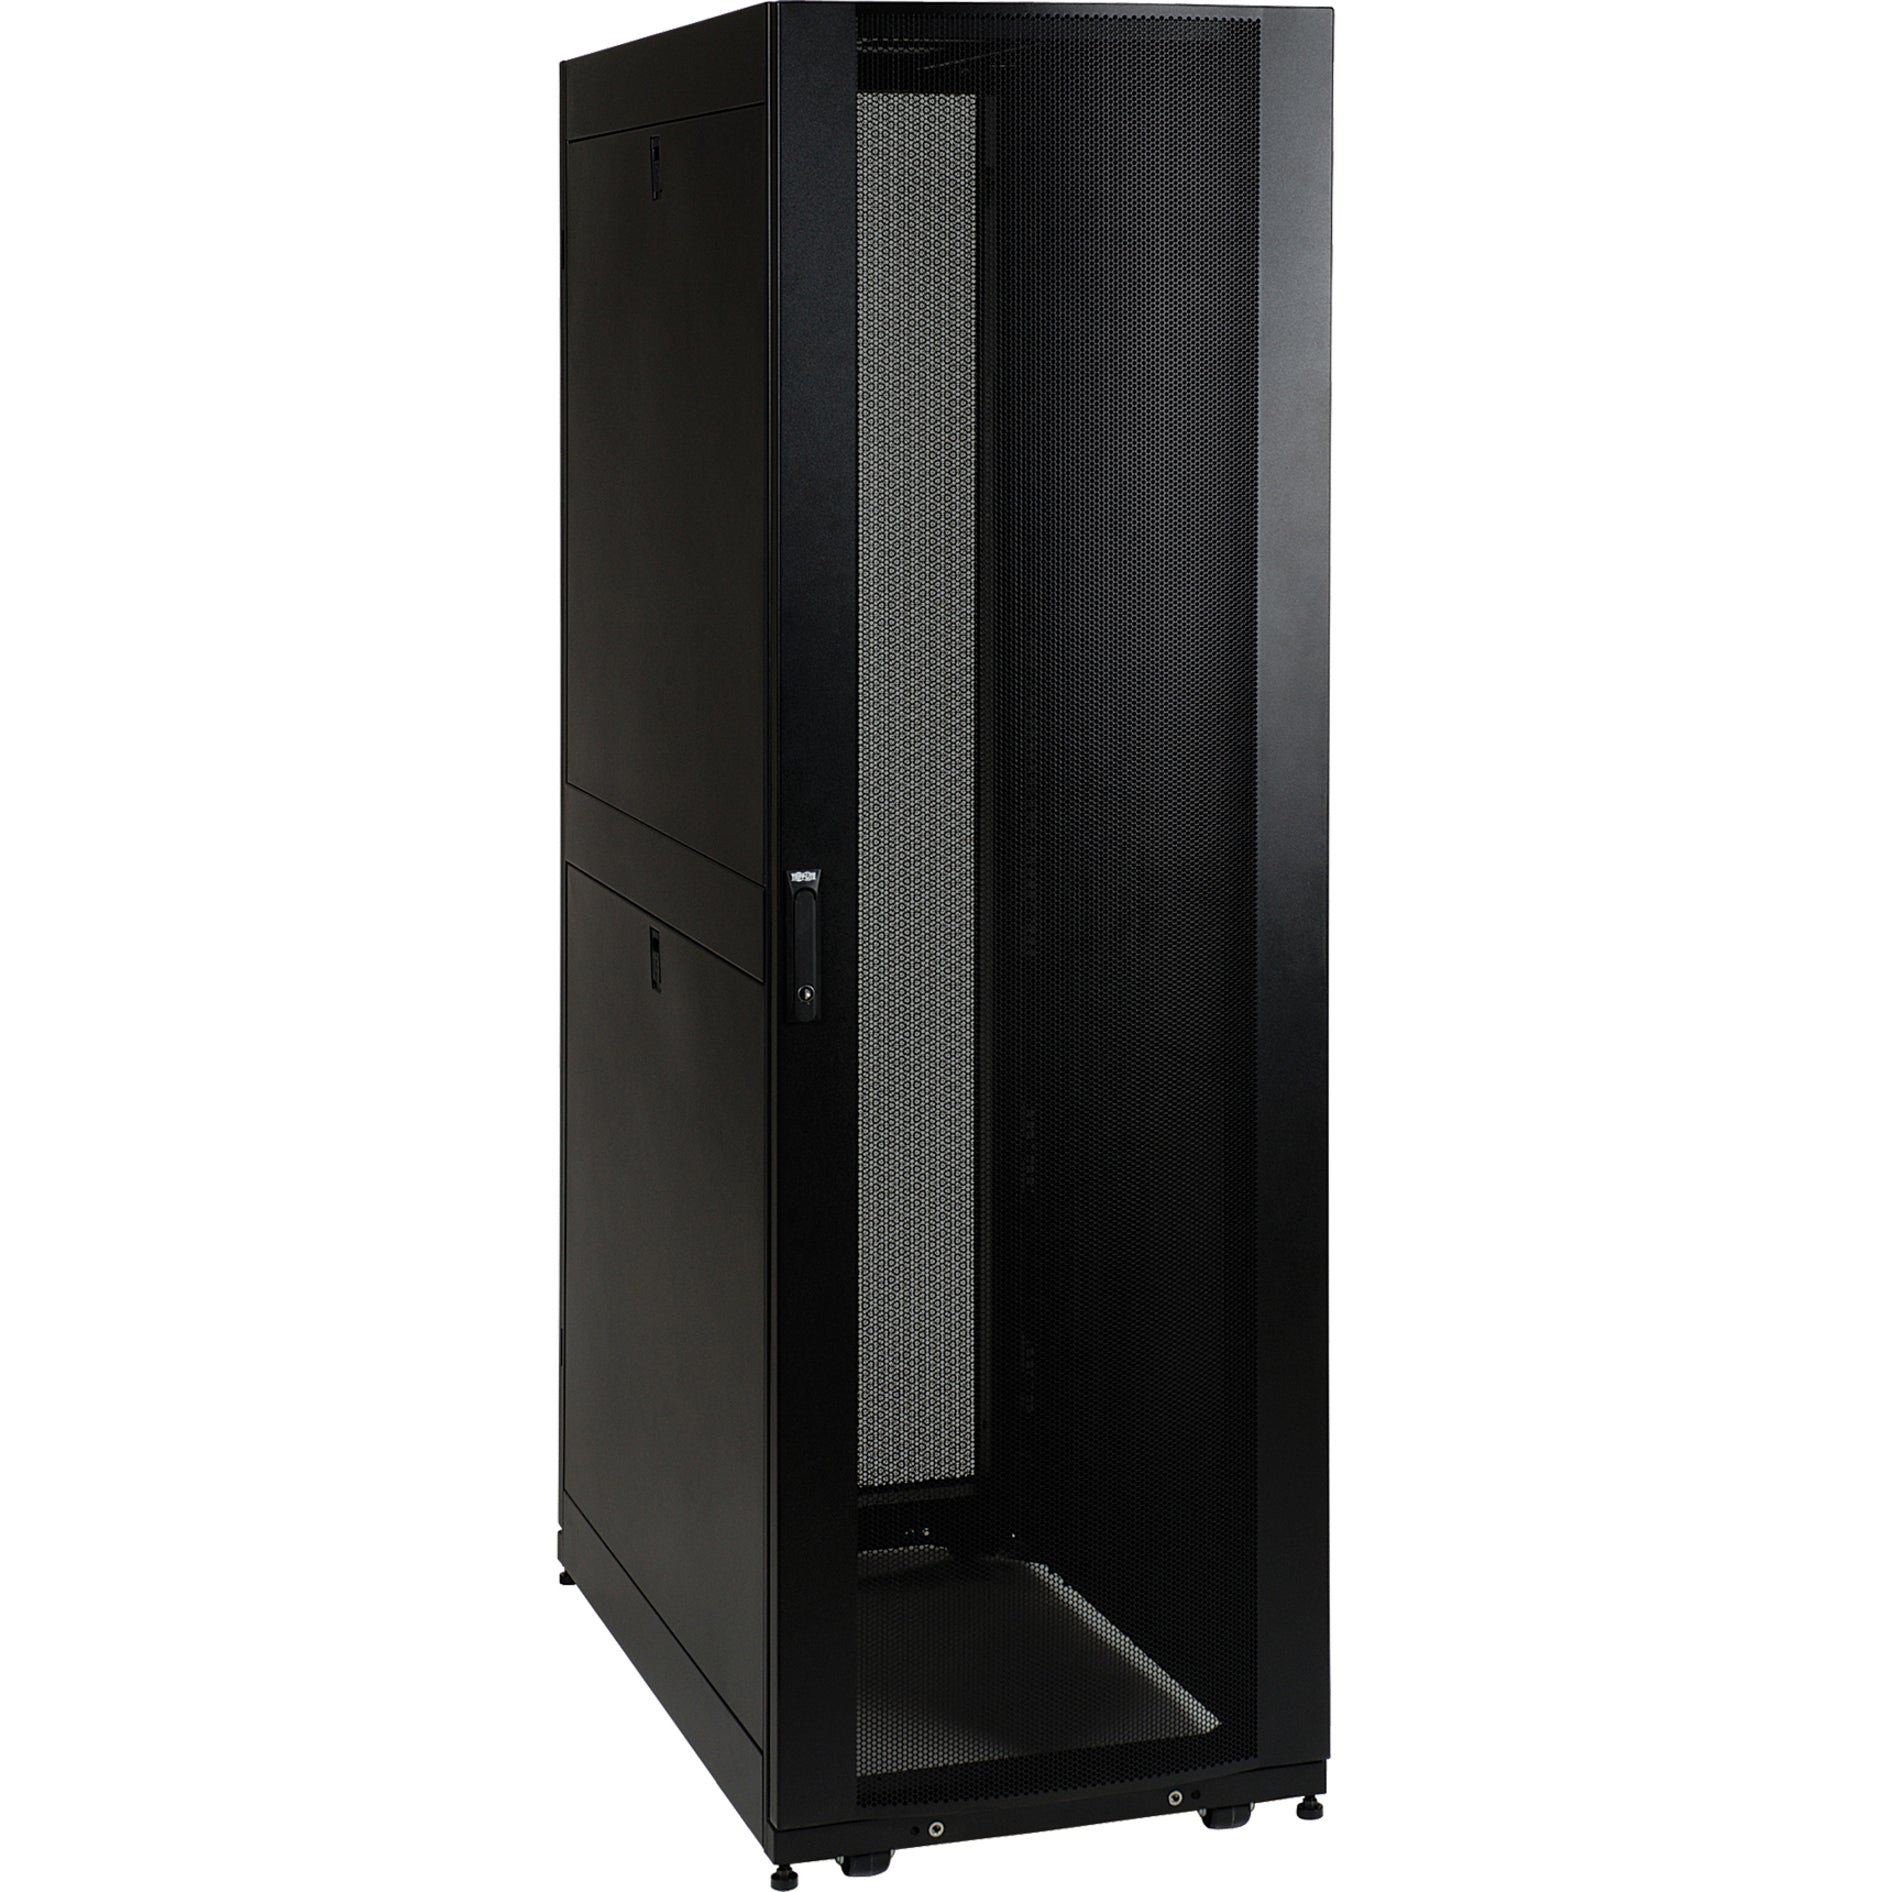 Tripp Lite SR45UB SmartRack Premium Enclosure, 45U Black, 36" Depth, 1500lb Load Rating